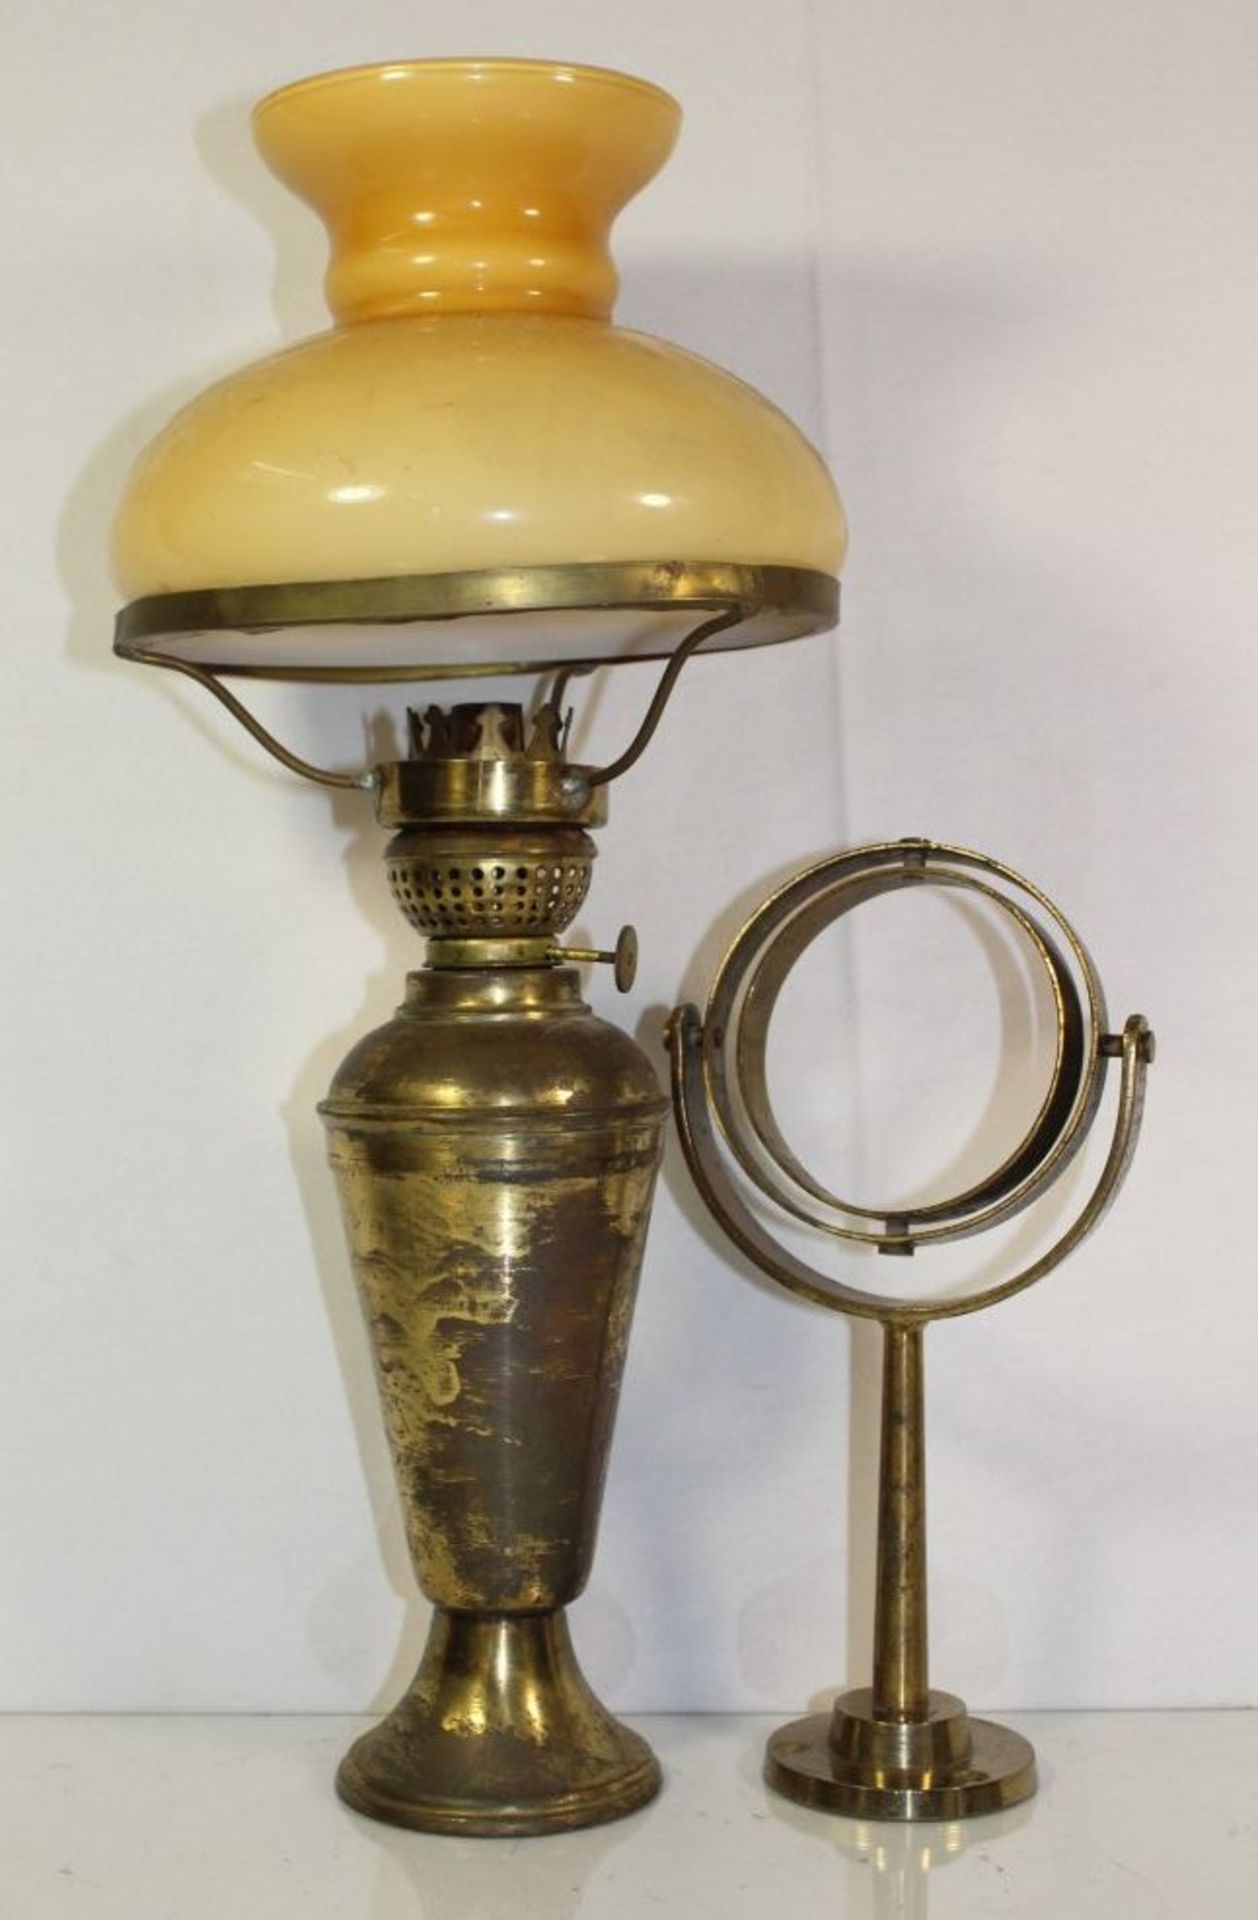 Petroleumlampe mit kardanischer Aufhängung, Messing, Glasschirm, Zylinder fehlt, H-45cm.- - -22.61 %